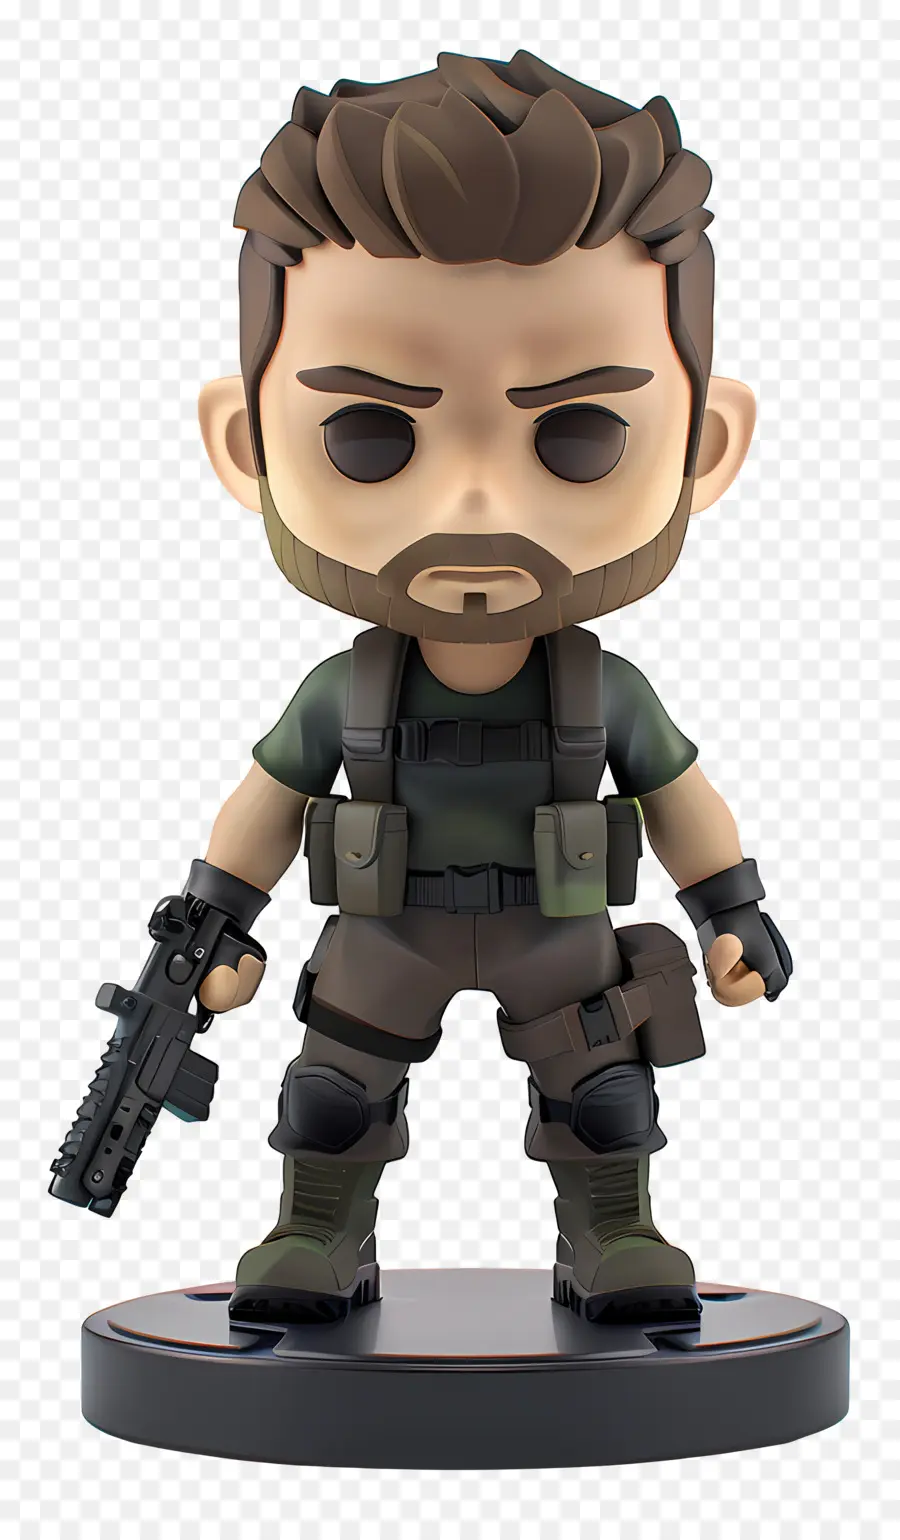 Chris Redfield Figura Soldata militare Arma Bead - Uomo in abbigliamento militare che tiene l'arma con accessori